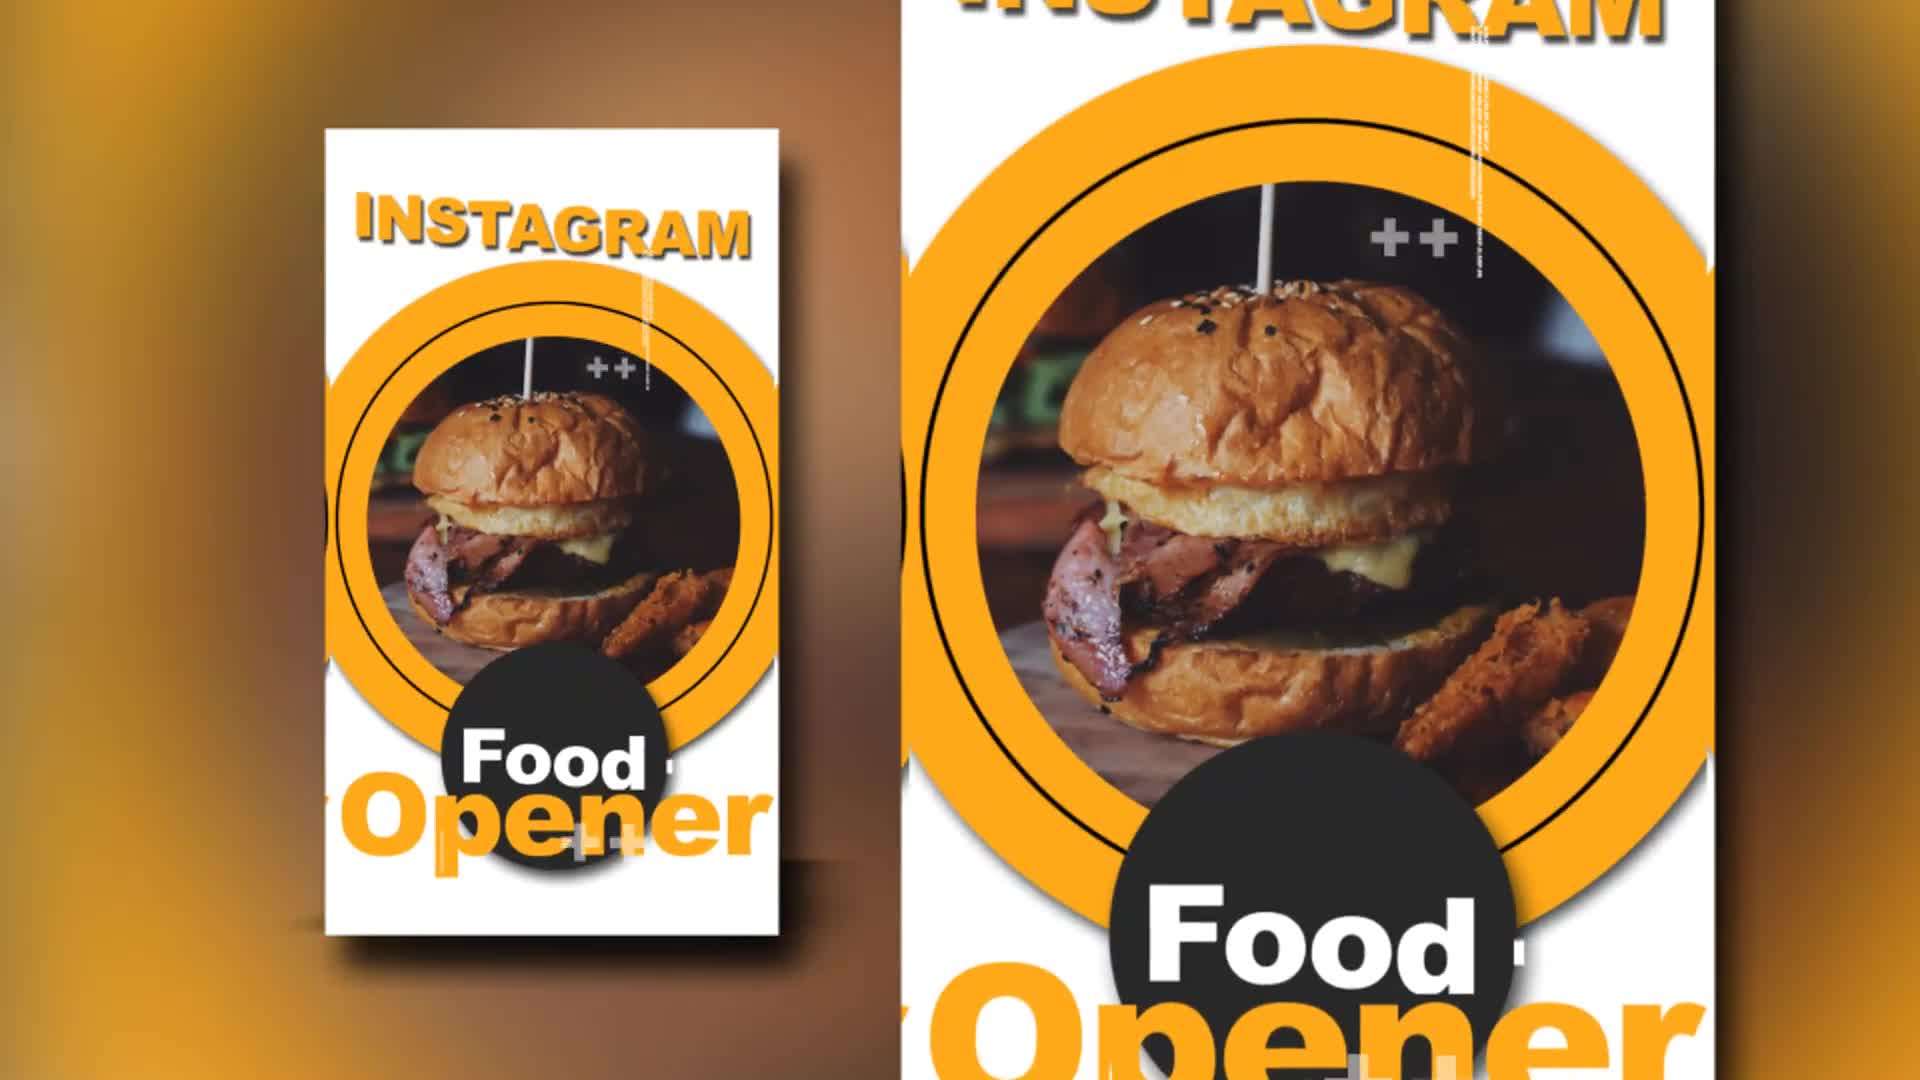 AE模板 | 竖屏创意美食餐饮汉堡蔬菜餐厅快餐宣传片动画